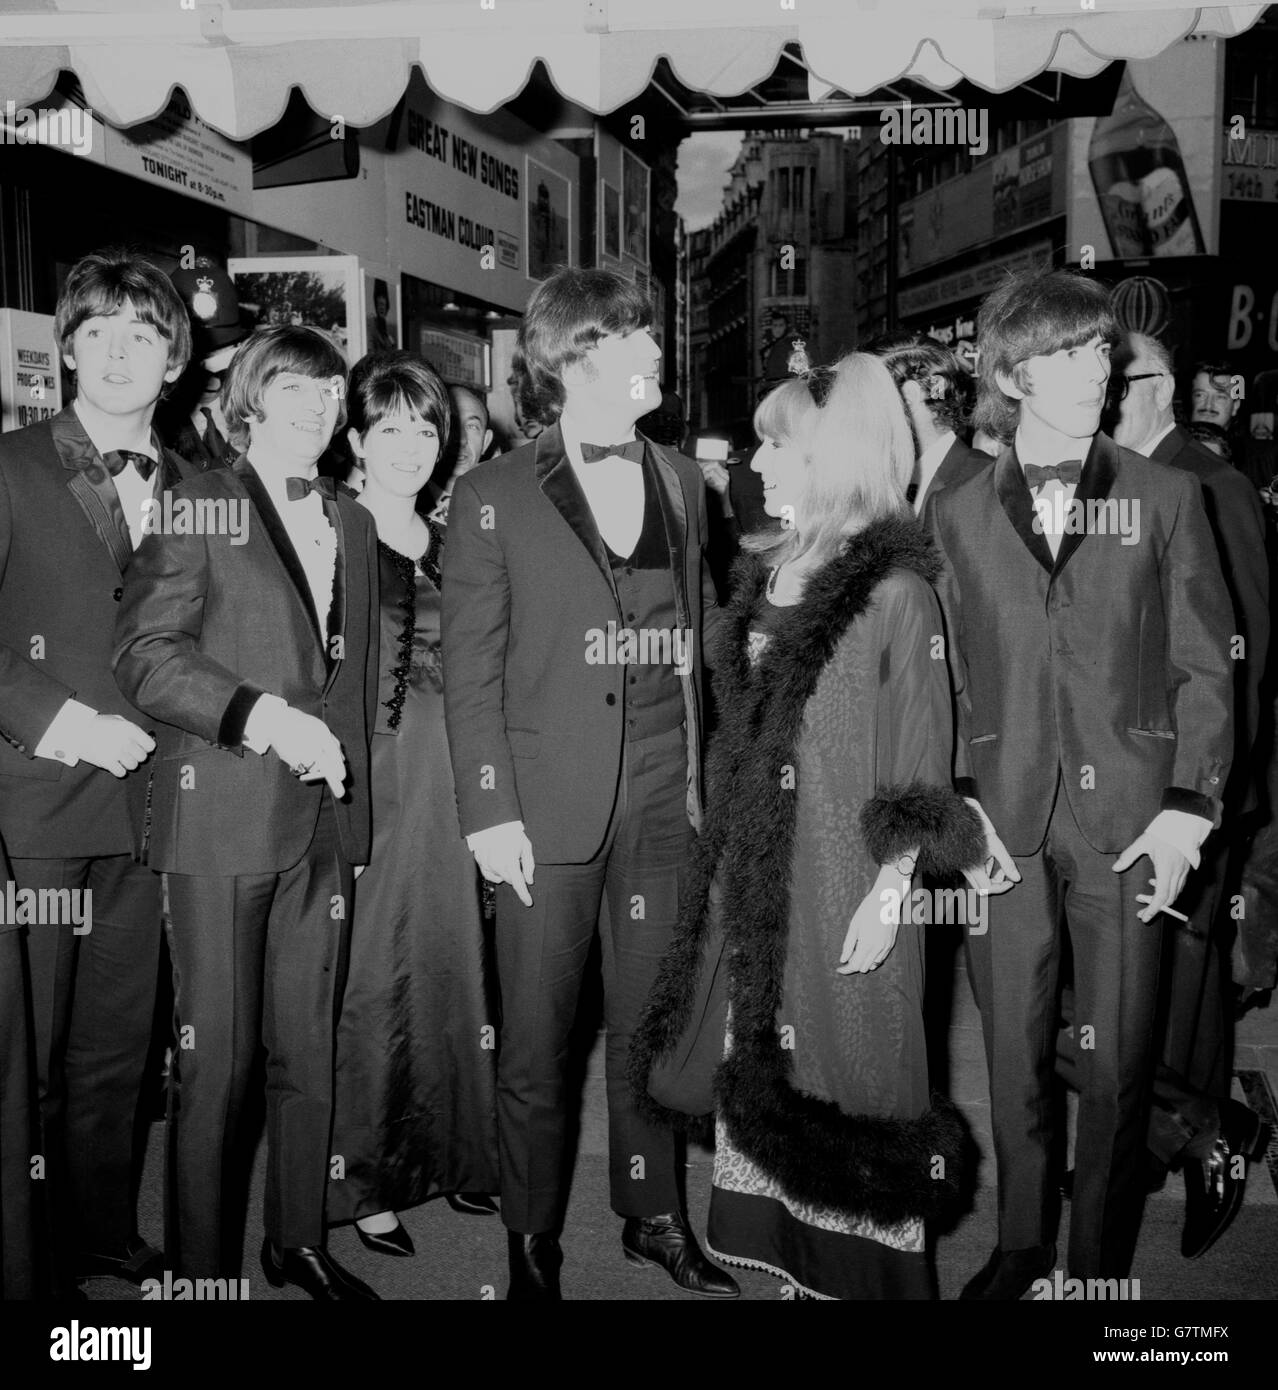 Les Beatles, avec leurs épouses, arrivent au pavillon de Londres, Piccadilly Circus, Londres, pour la première mondiale de leur nouveau film "Help!".(G-D) Paul McCartney, Ringo Starr et son épouse Maureen, John Lennon et son épouse Cynthia, et George Harrison. Banque D'Images